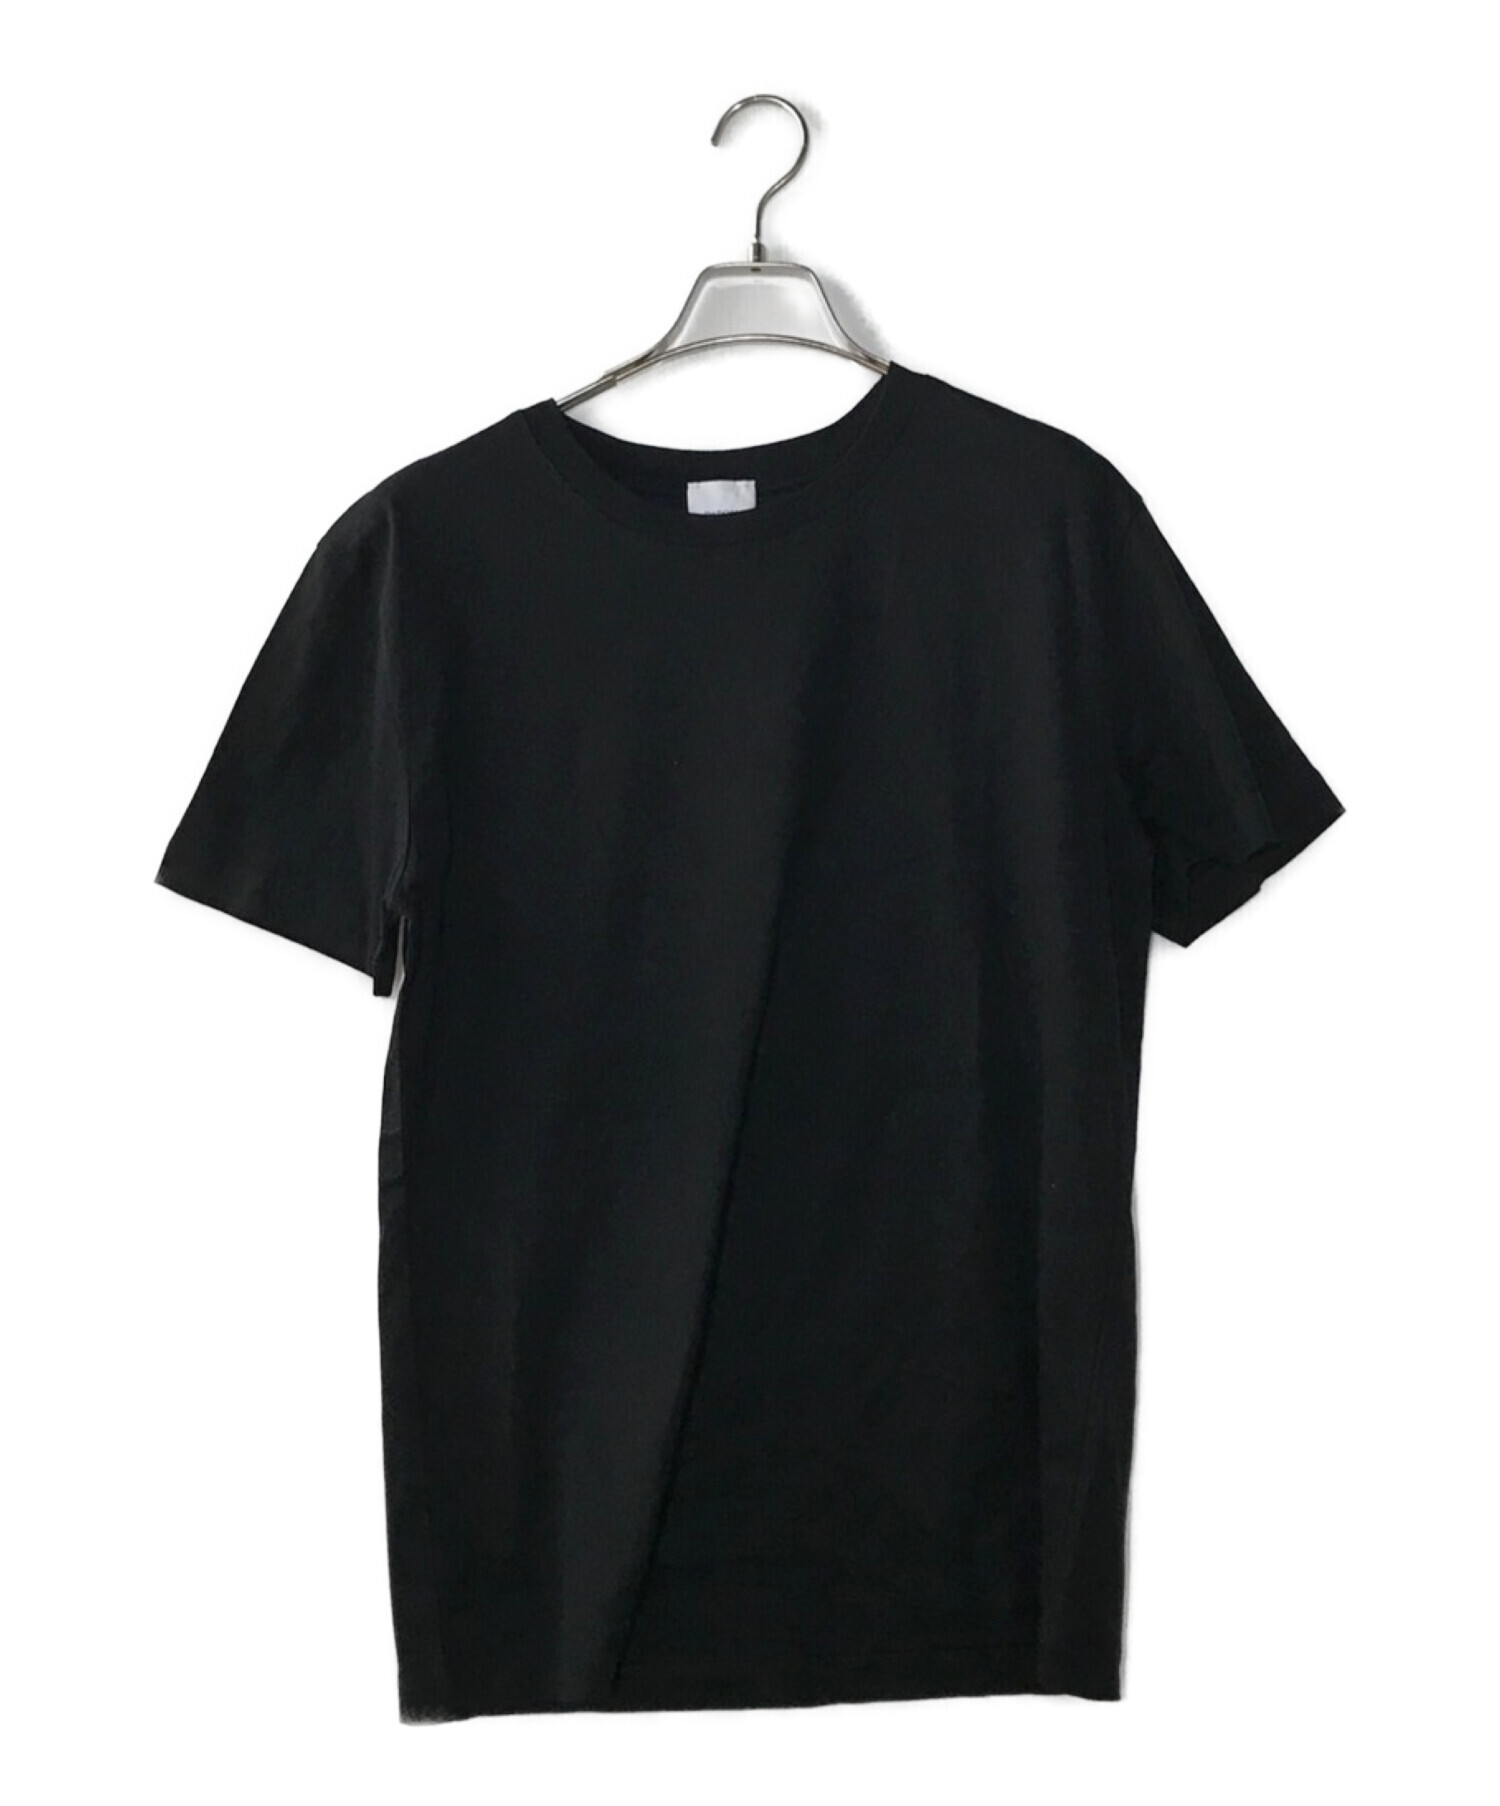 patou (パトゥ) ハートインサートTシャツ ブラック サイズ:S